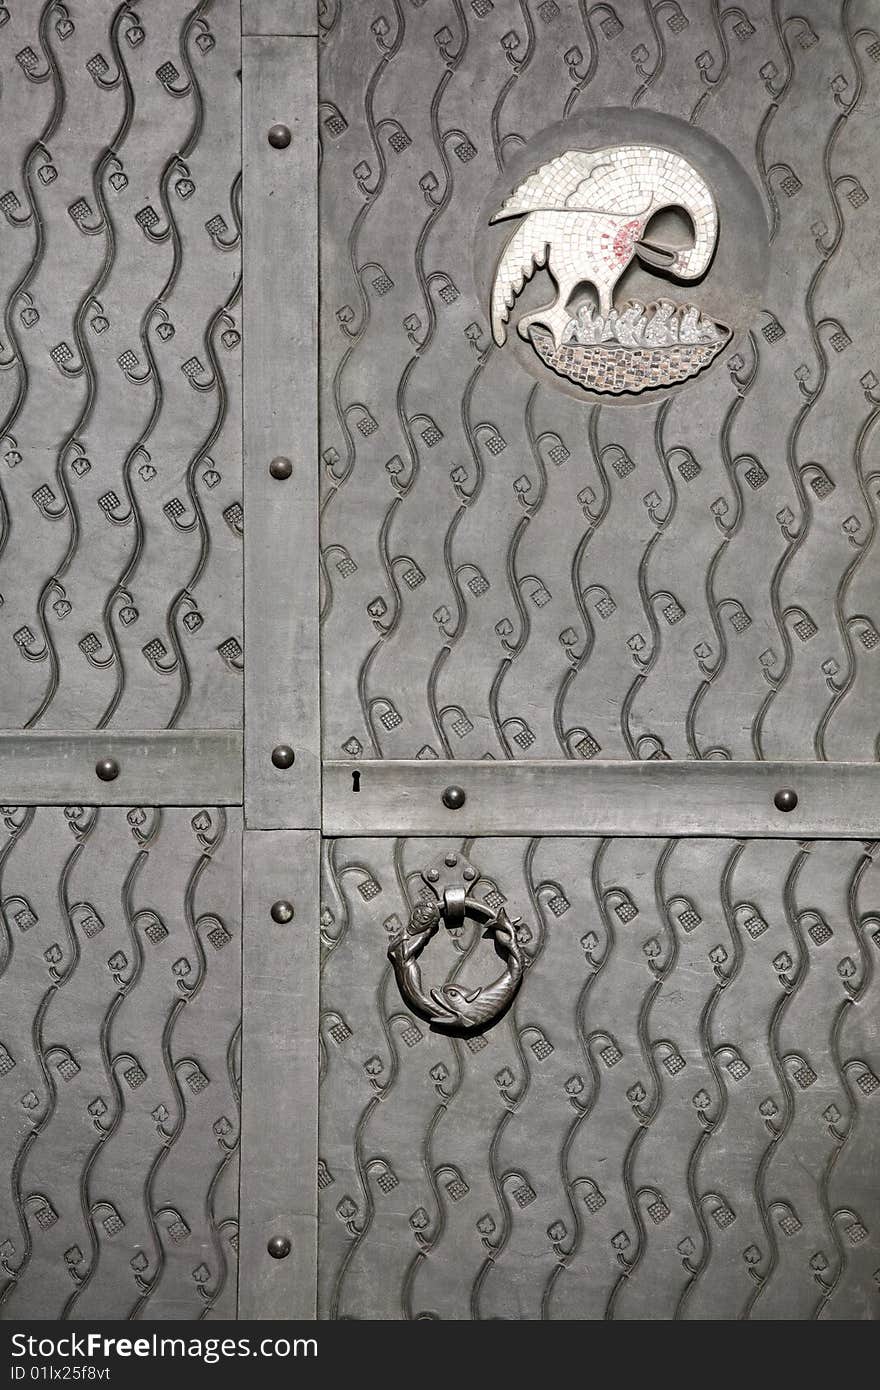 Metal door decoration. Detail of old metal iron entrance door.